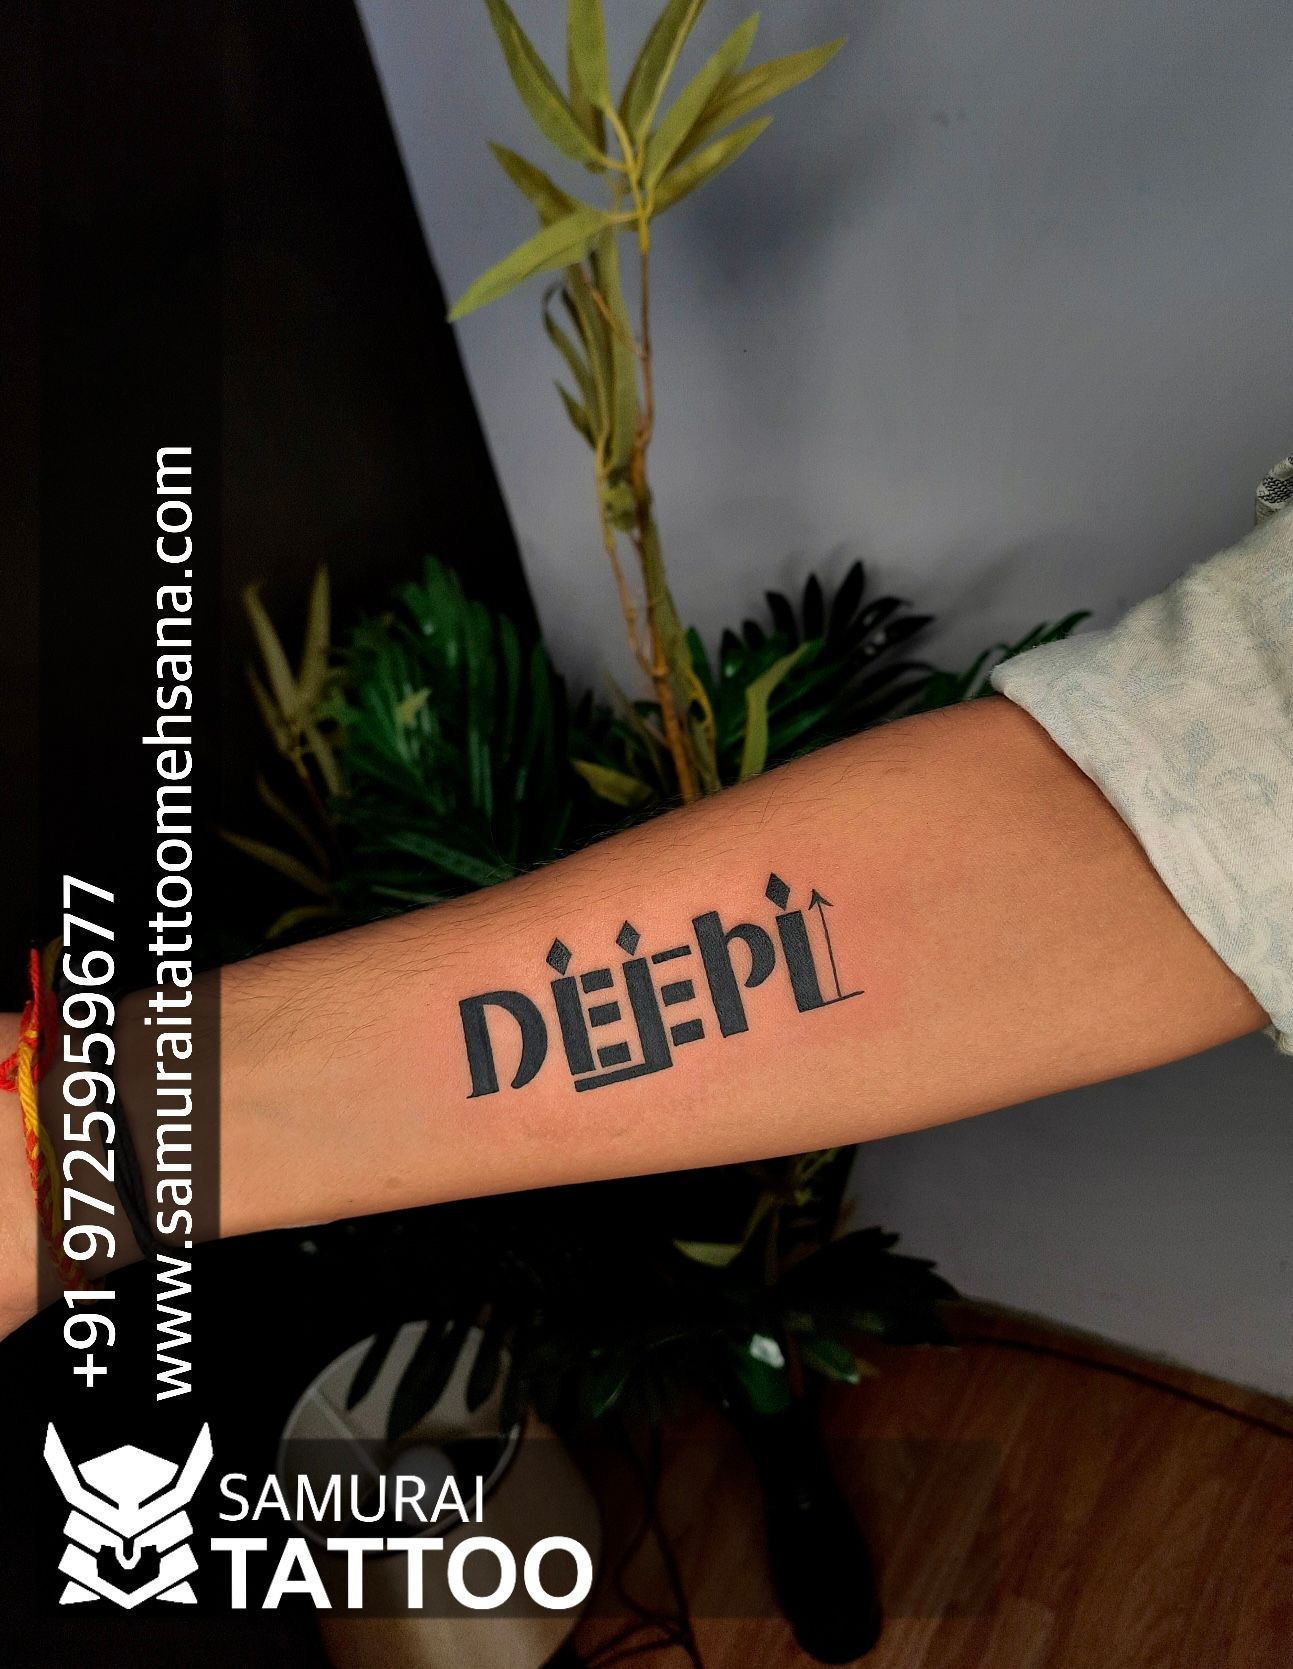 Learn 80 about chinnu name tattoo designs super cool  indaotaonec